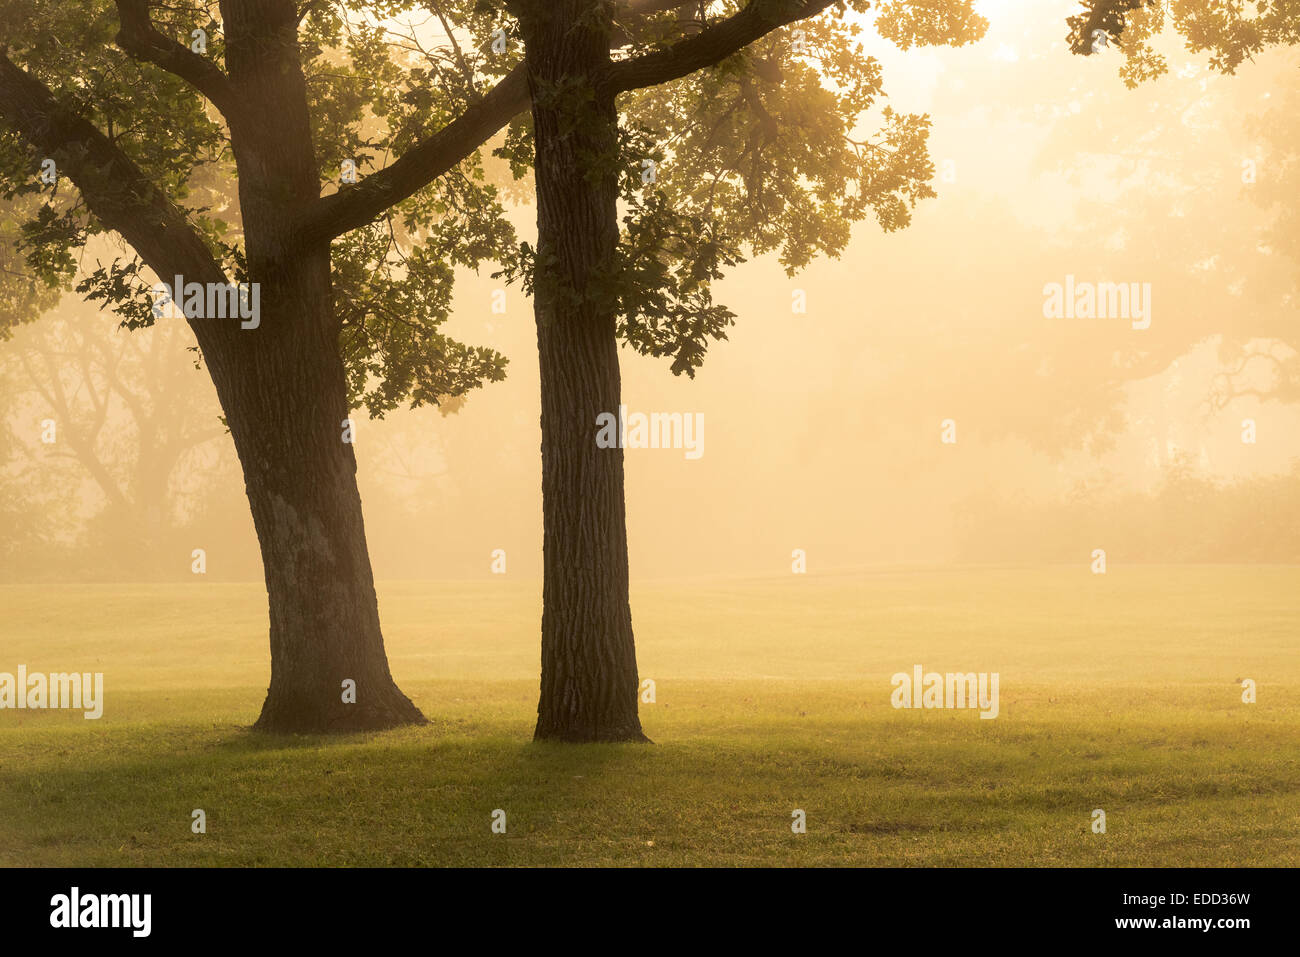 Golden sunlight illuminates a pair of oak trees in fog at sunrise. Stock Photo